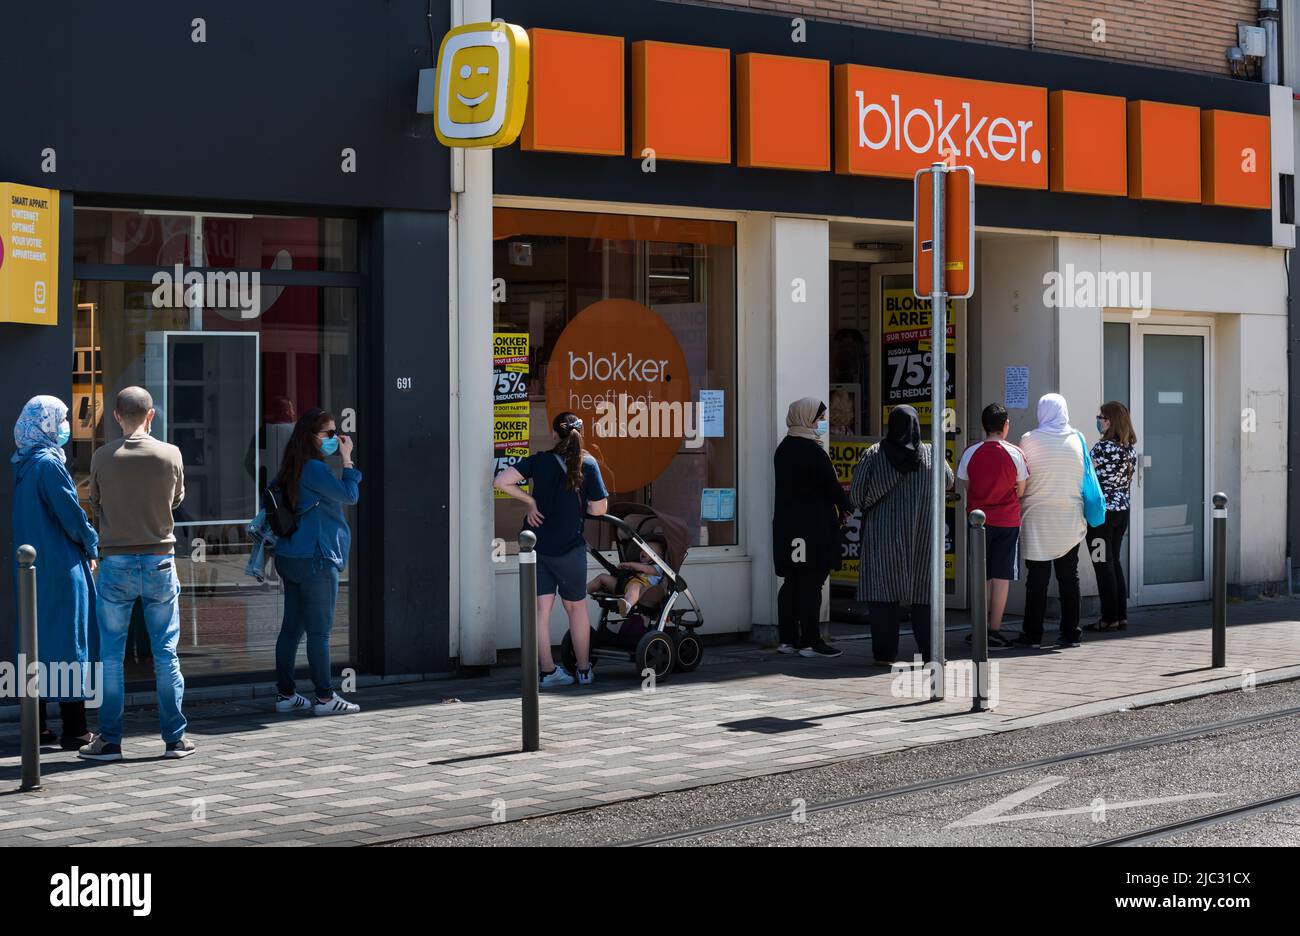 Jette, Regione capitale di Bruxelles - Belgio - 05 29 2020 persone in coda al negozio Blokker a causa della liquidazione Foto Stock